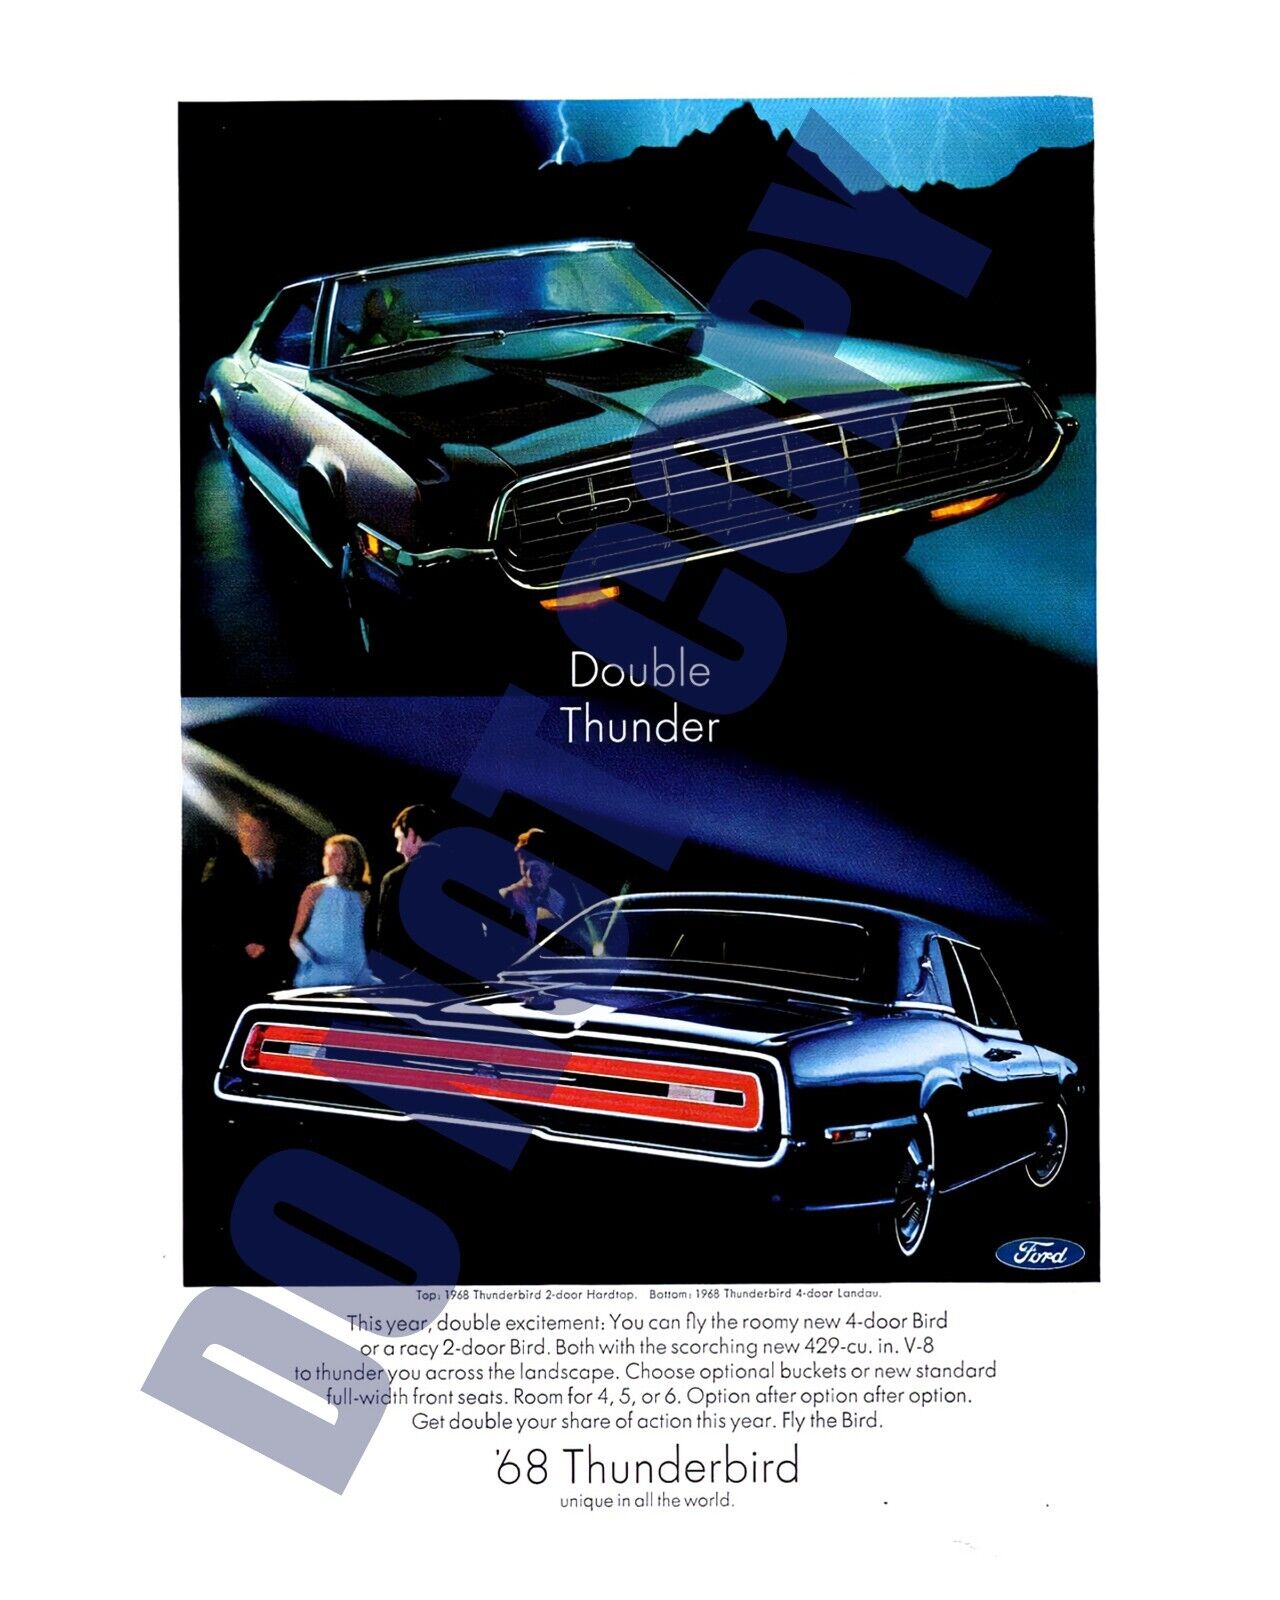 1968 Ford Thunderbird 2-Door Hardtops & 4-Door Landau Magazine Ad 8x10 Photo